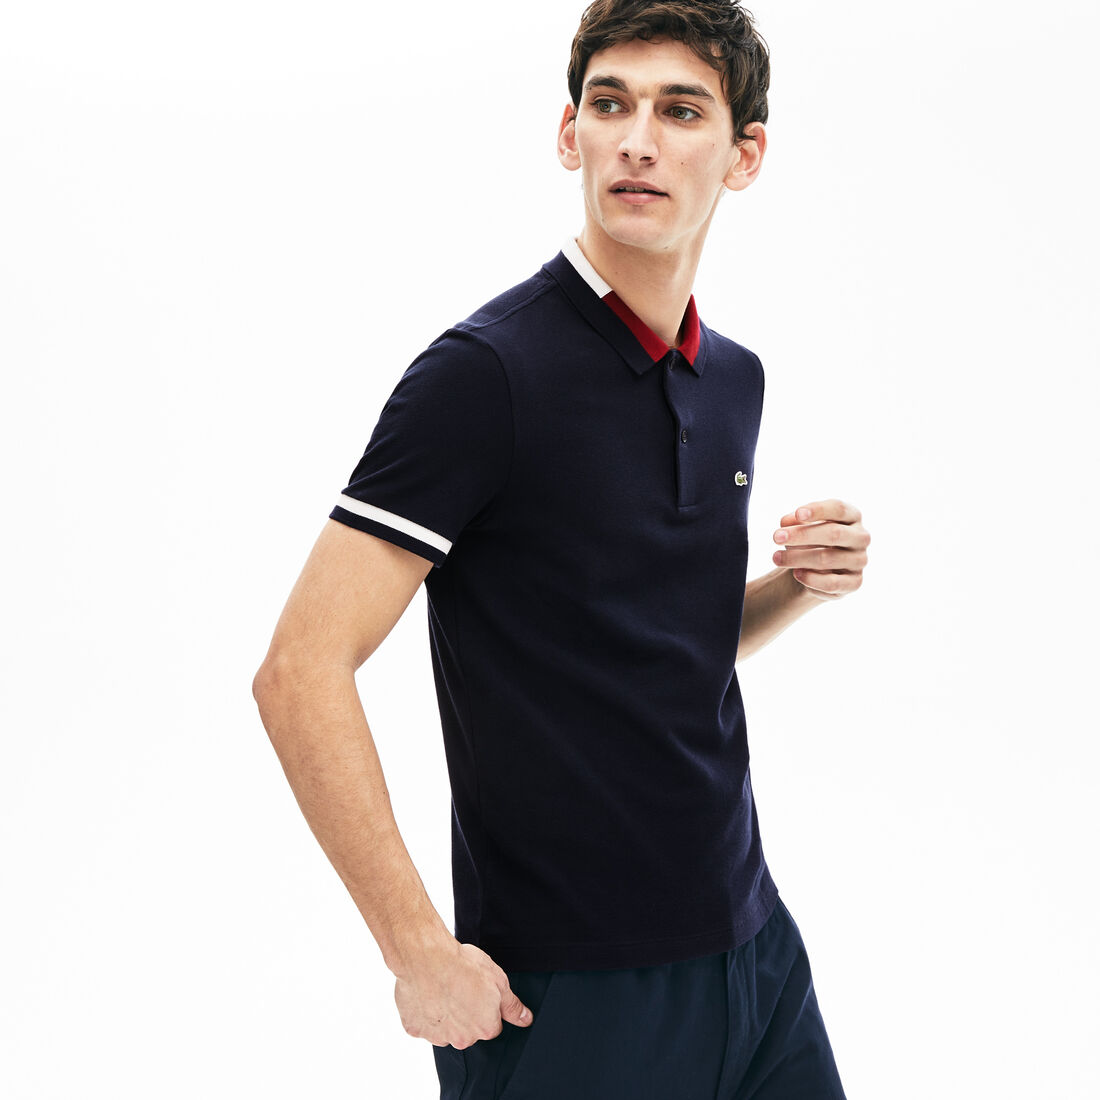 Men's Lacoste Contrast Cotton Polo Shirt